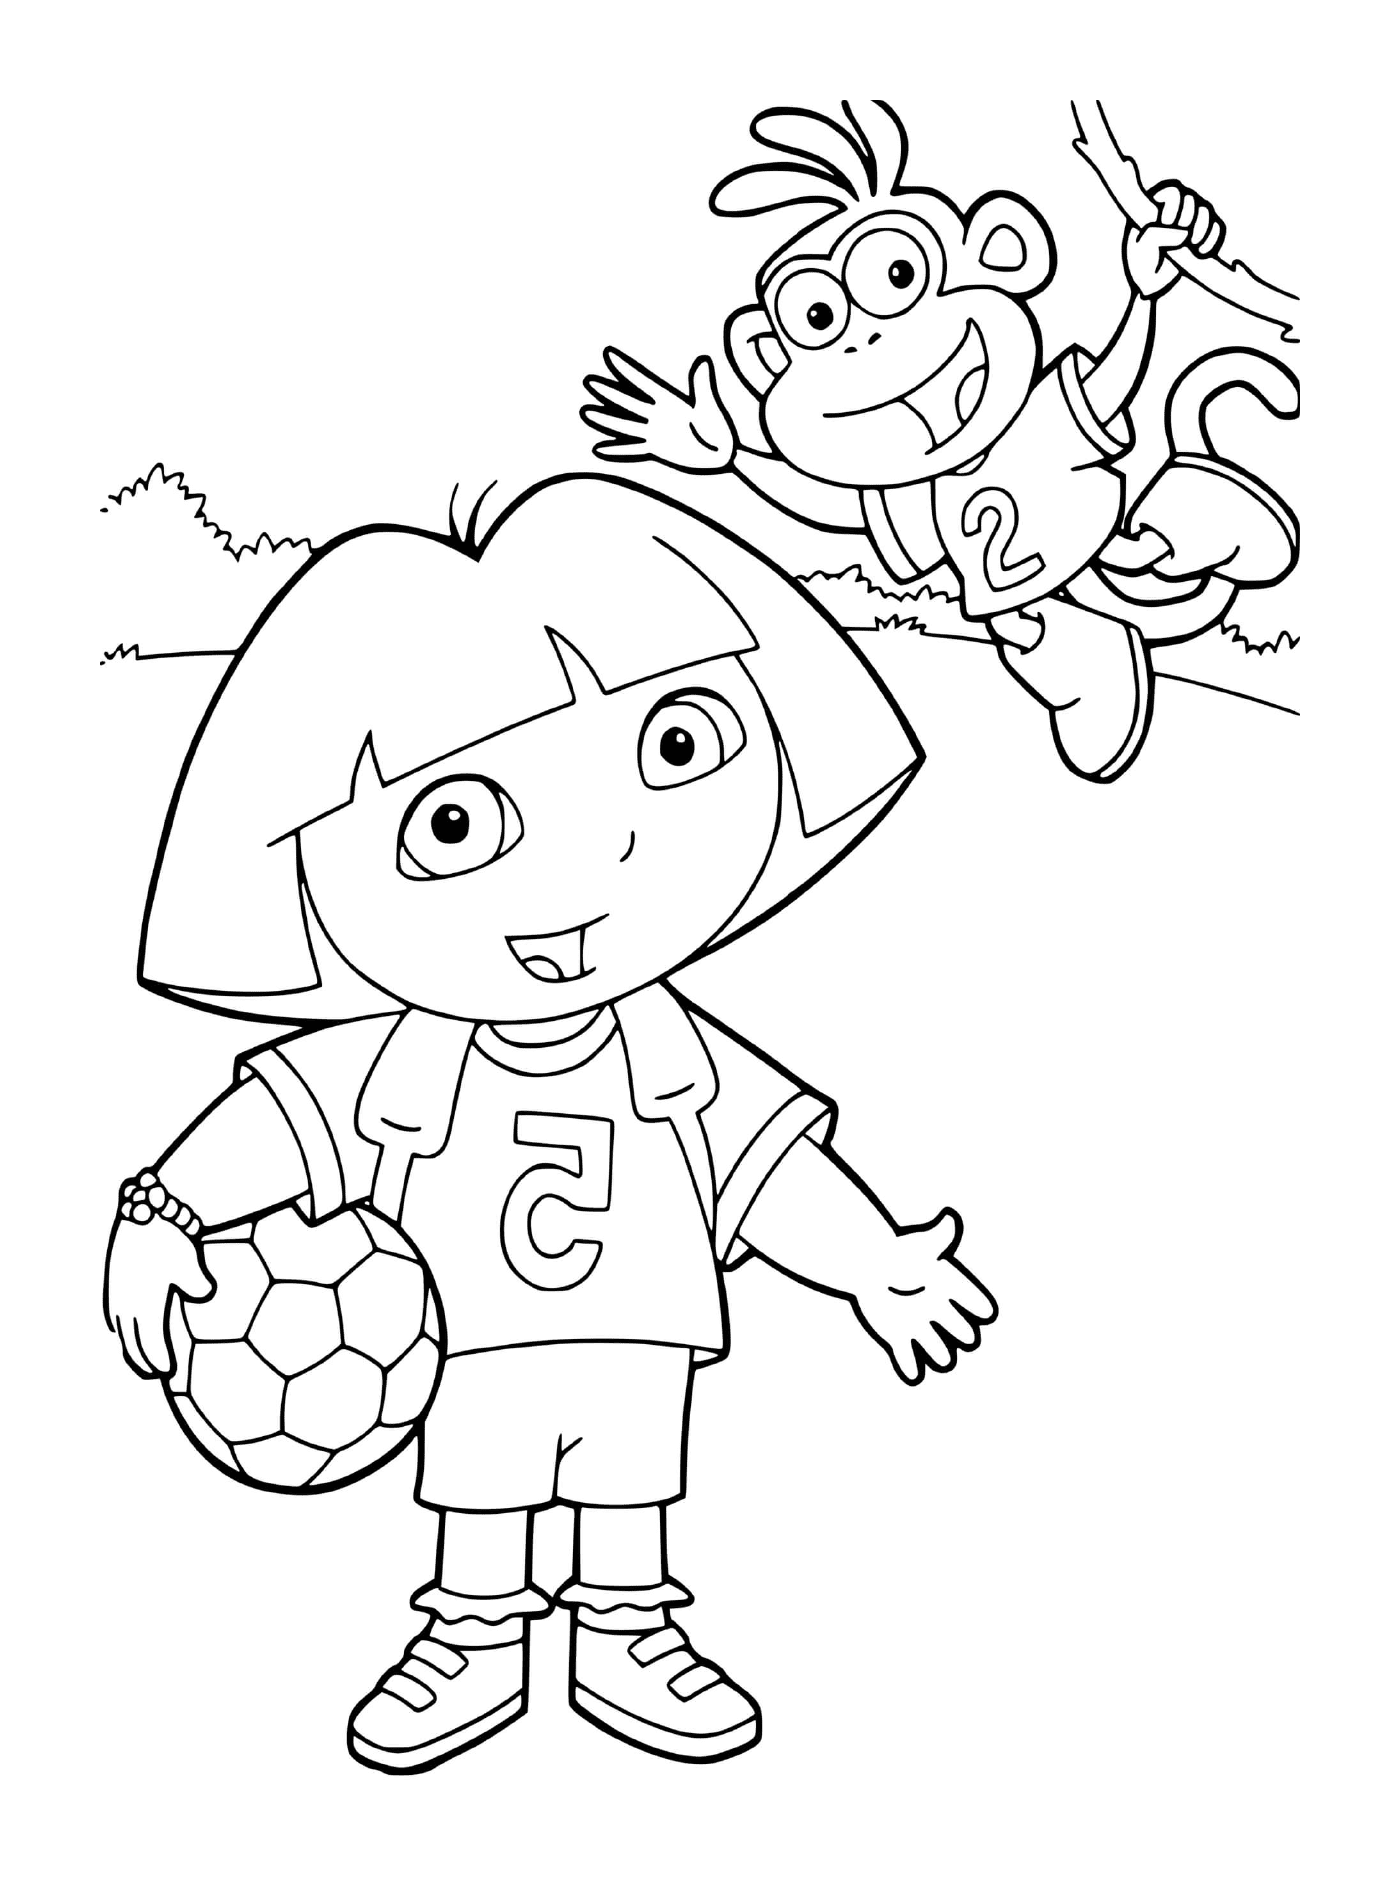   Dora joue au foot avec Babouche dans leur équipe 